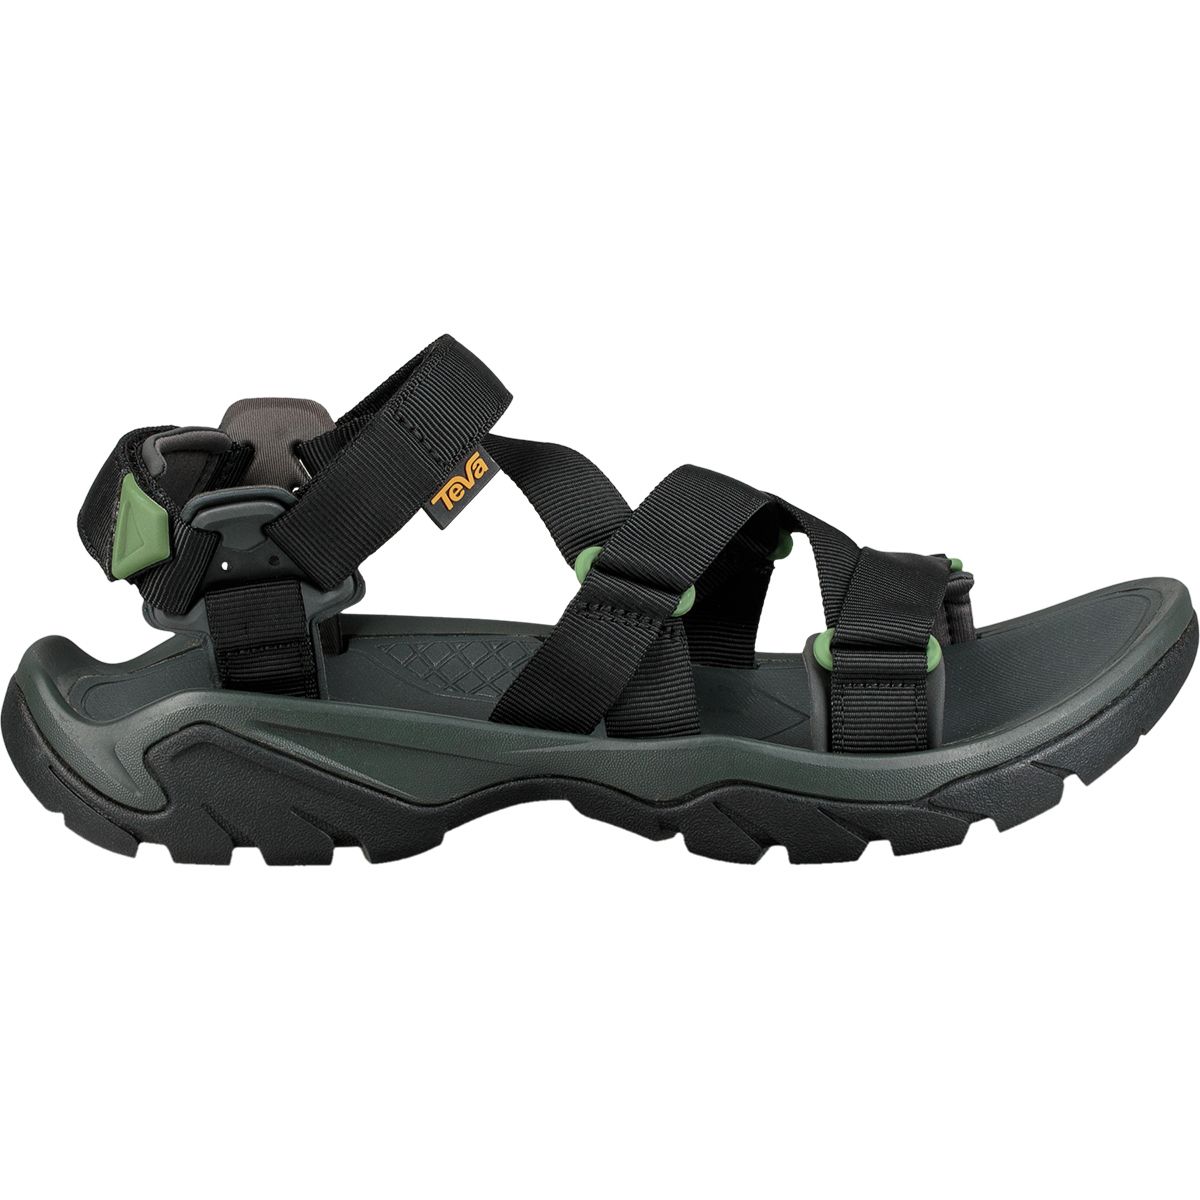 Ooze Distrahere Odysseus Teva Terra Fi 5 Sport Sandal - Men's - Footwear